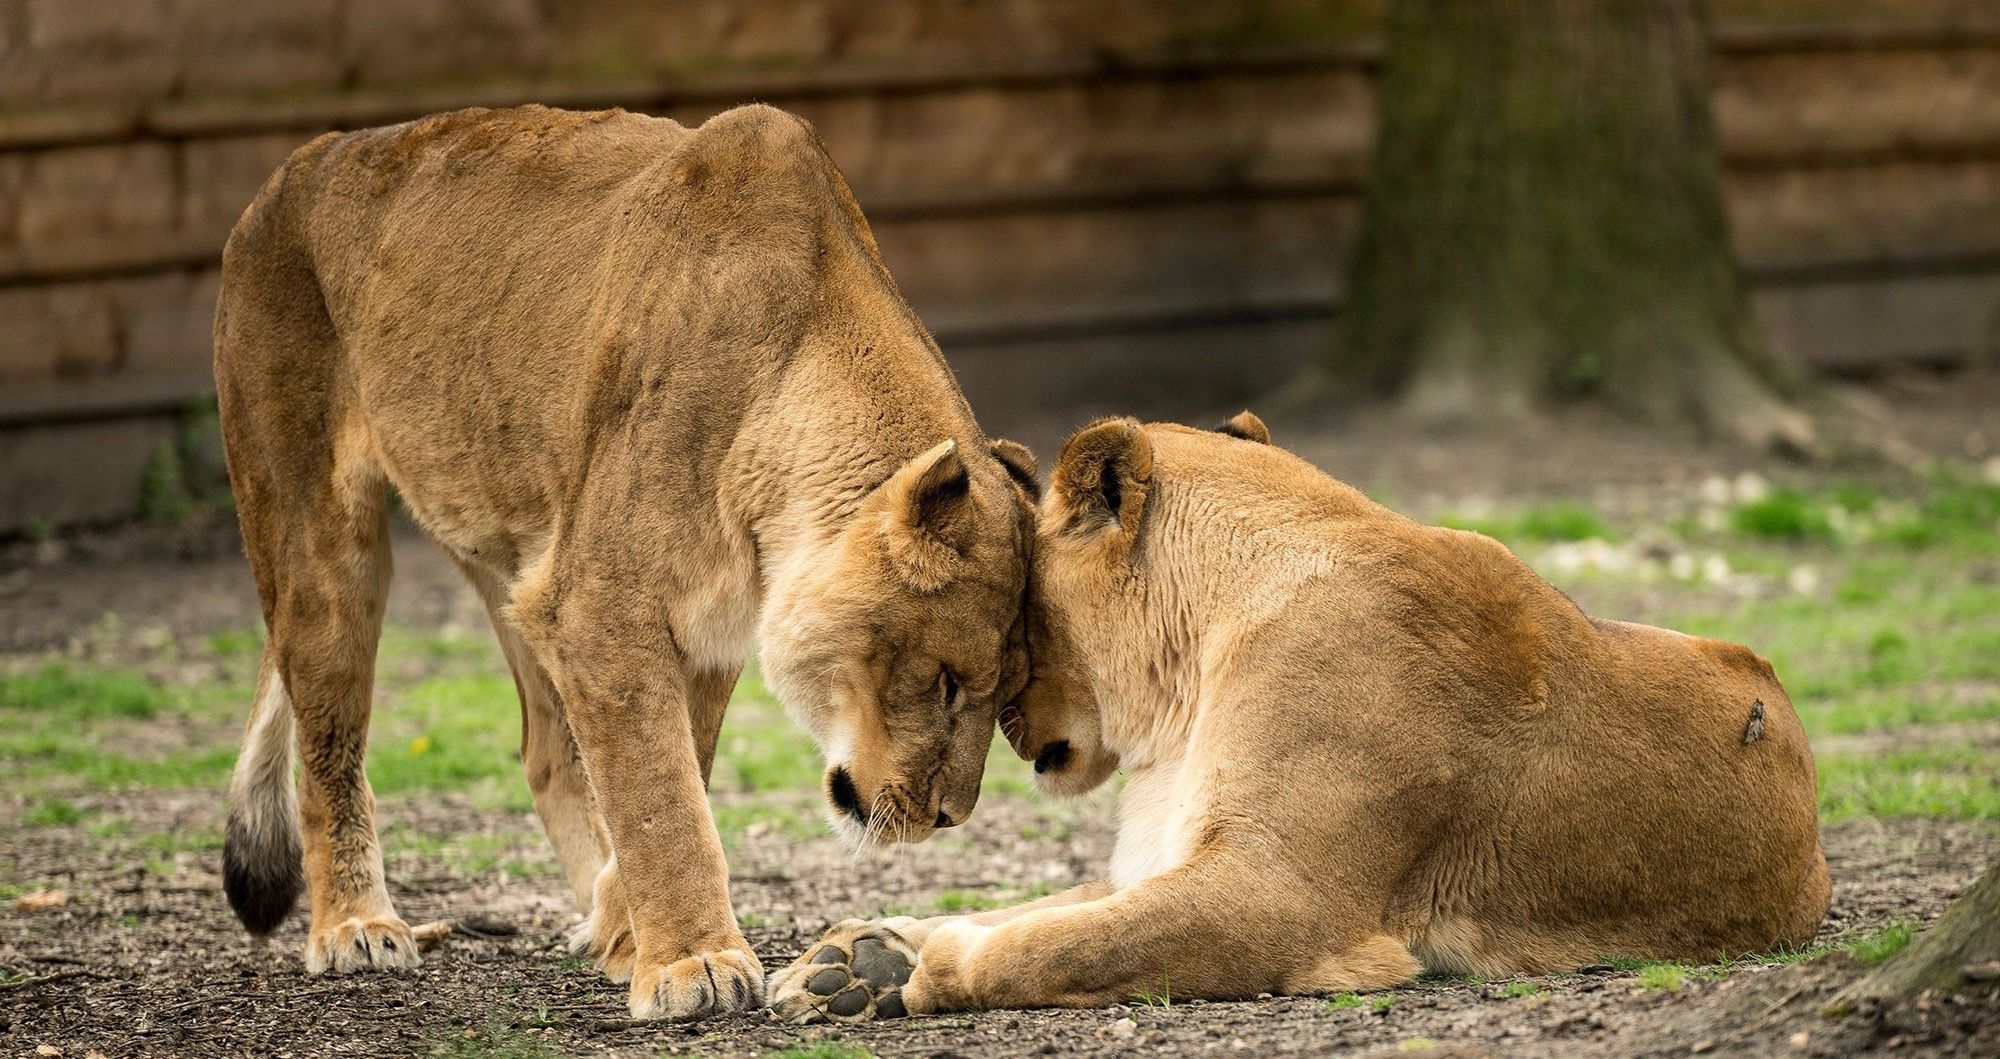 Leoes tigres e um jaguar escaparam de um zoologico alemao